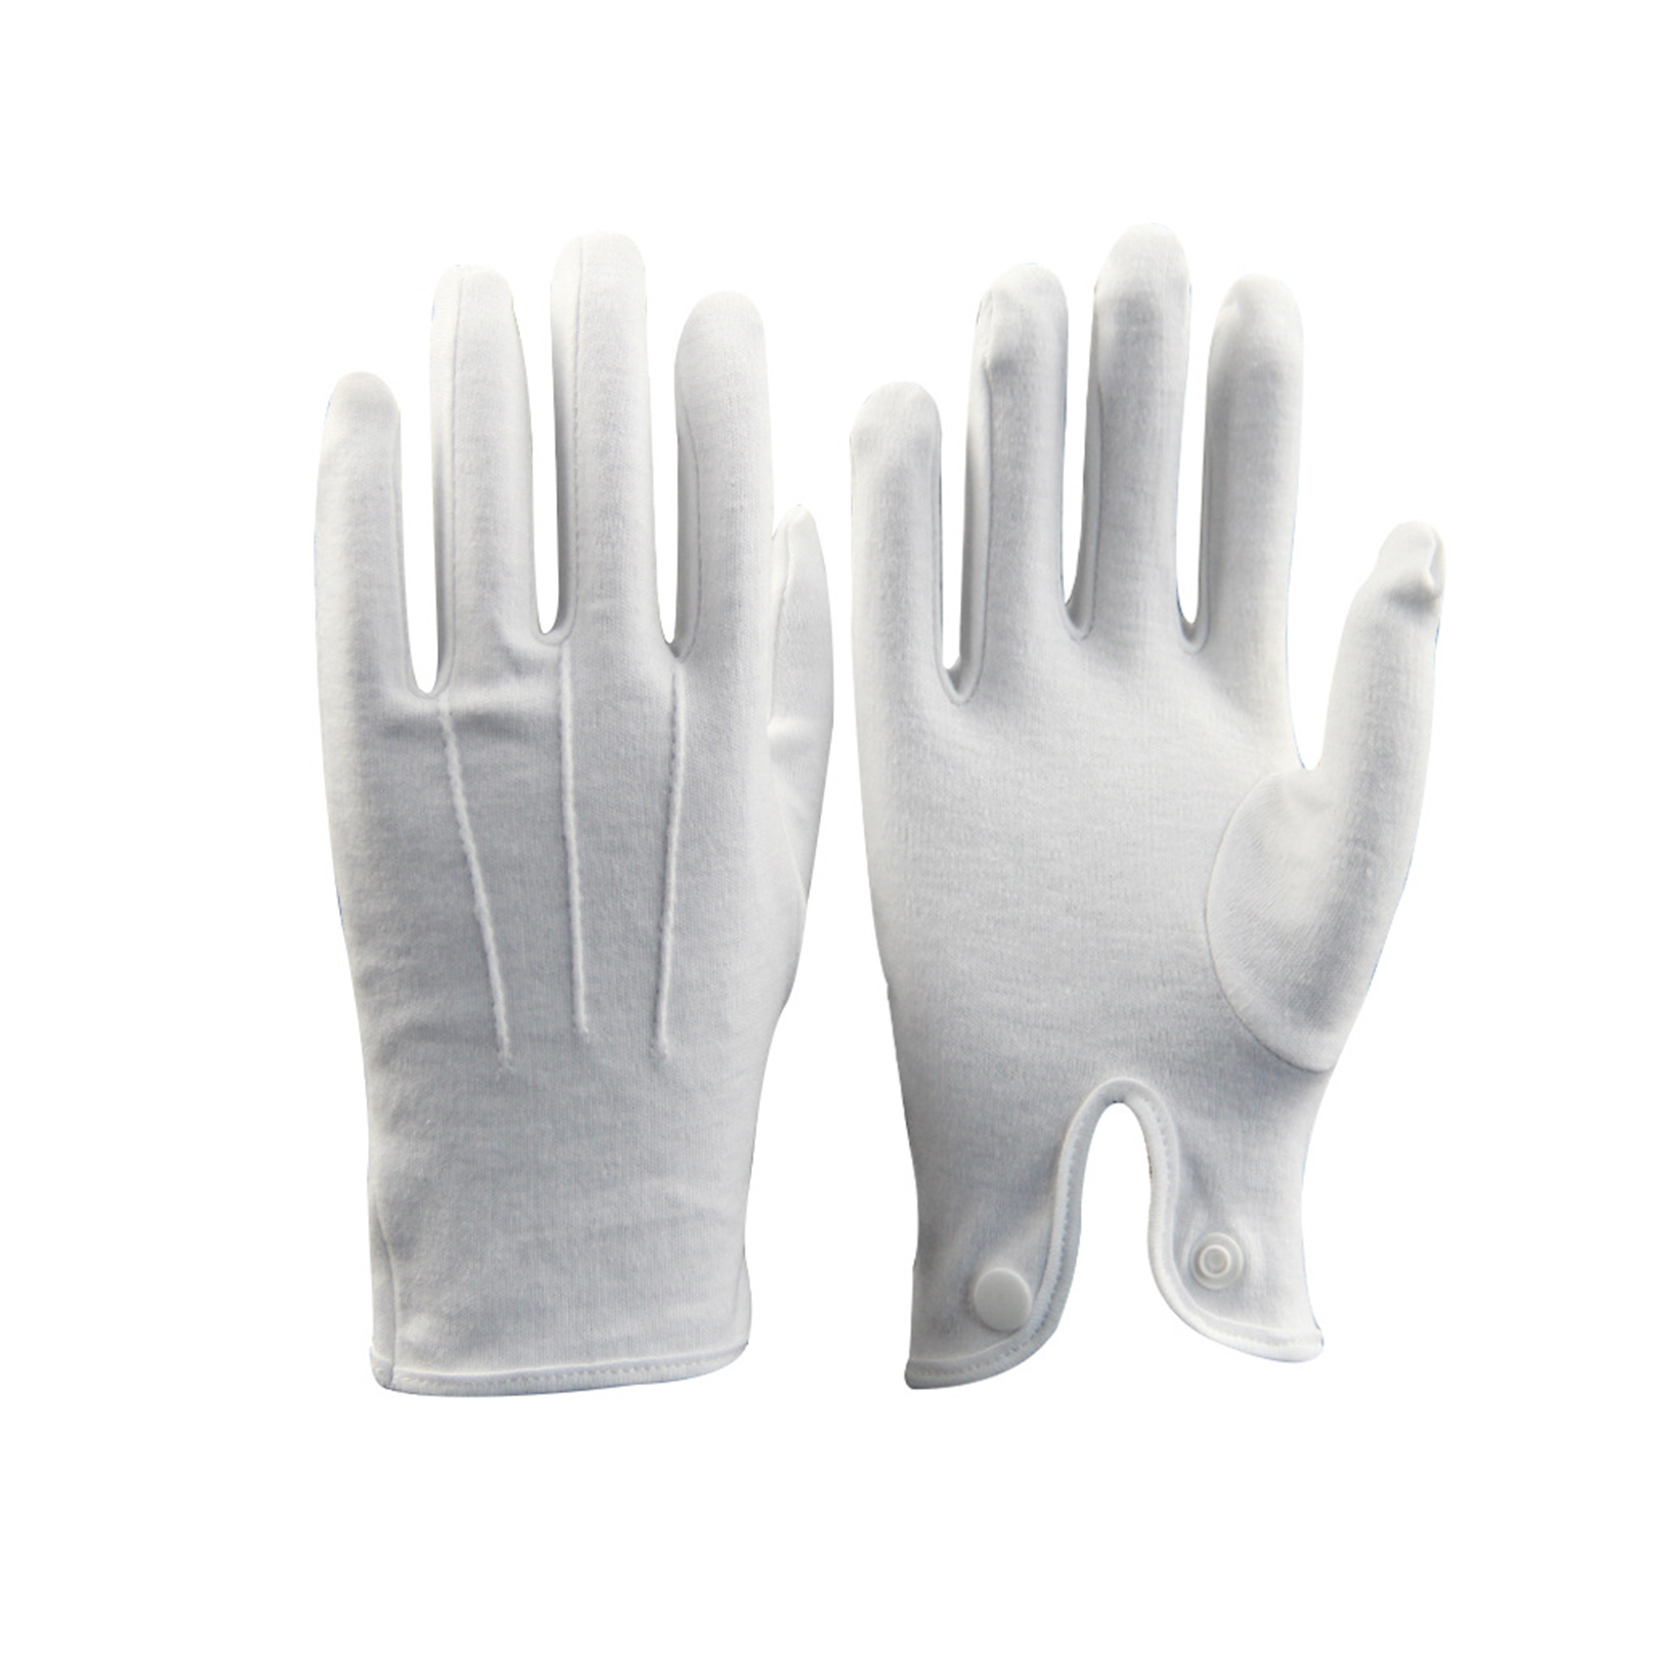 Luvas de comando de etiqueta de puño elástico de algodón branco ao por maior, guantes de inspección de xoias para homes da señora